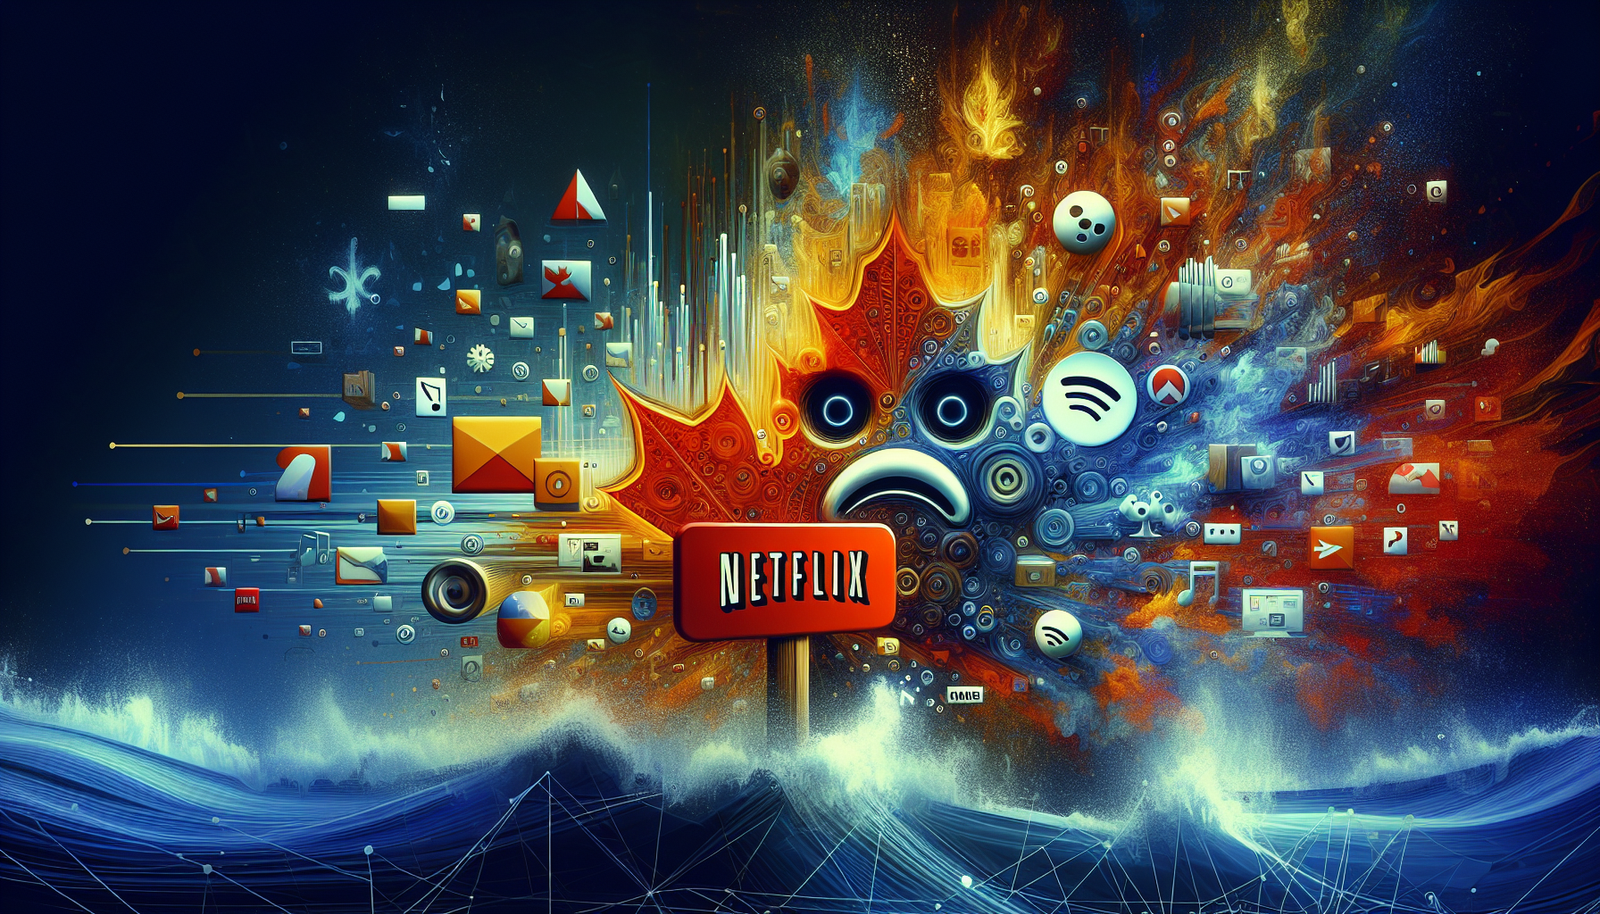 scopri come la richiesta canadese del 5% delle entrate da giganti dello streaming come Netflix e Spotify sta rimodellando il settore. scopri perché questa mossa sta sconvolgendo il panorama dello streaming.